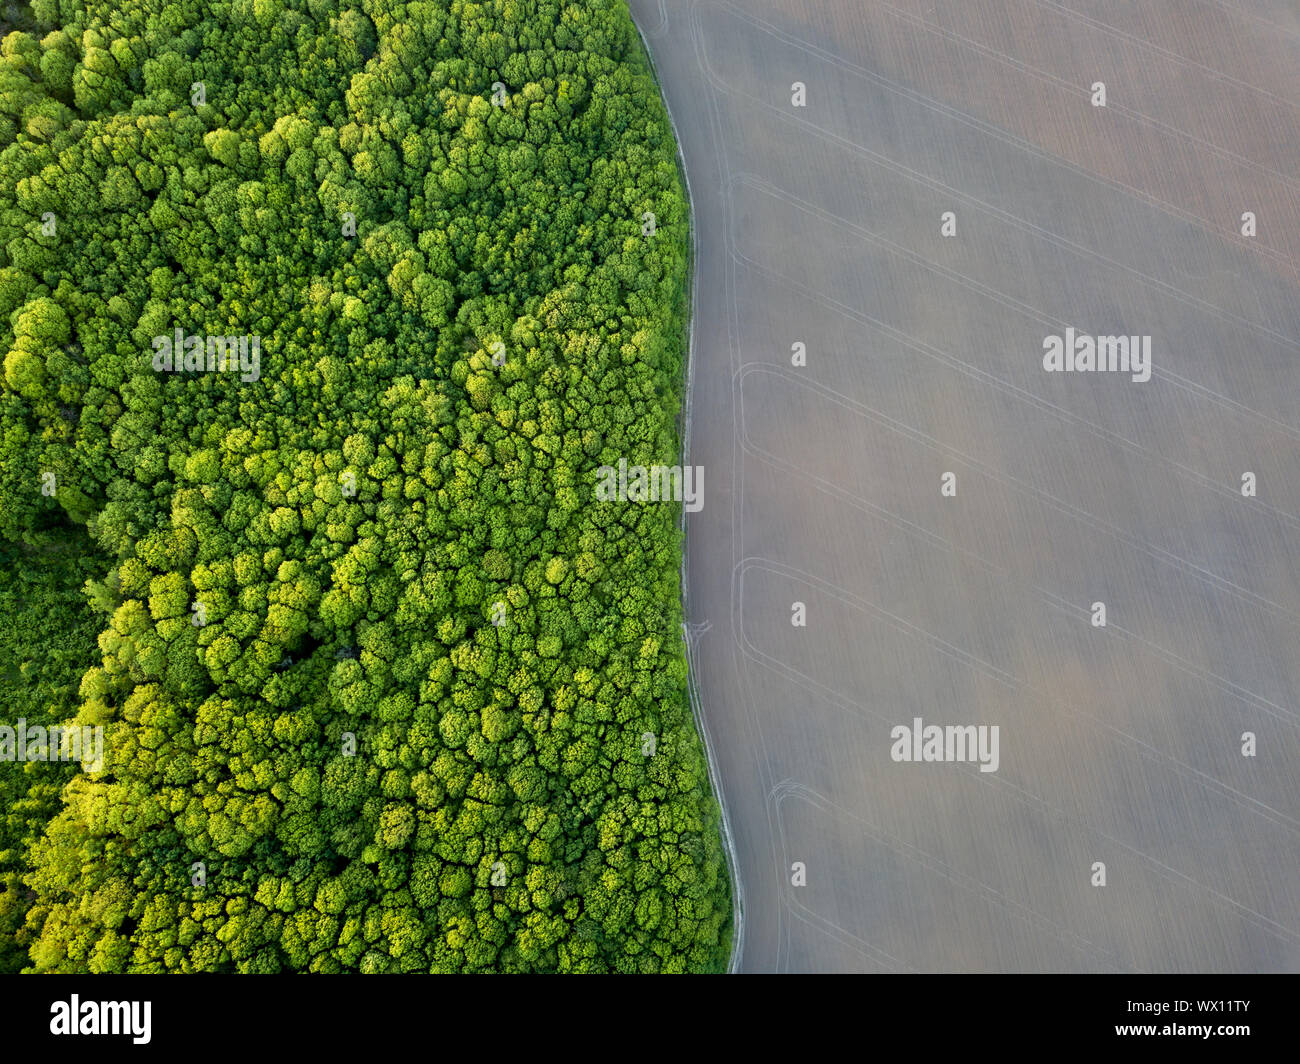 Vue aérienne du drone, une vue d'ensemble de la forêt avec des espaces verts et de terrain agricole avec la route en les divisant Banque D'Images